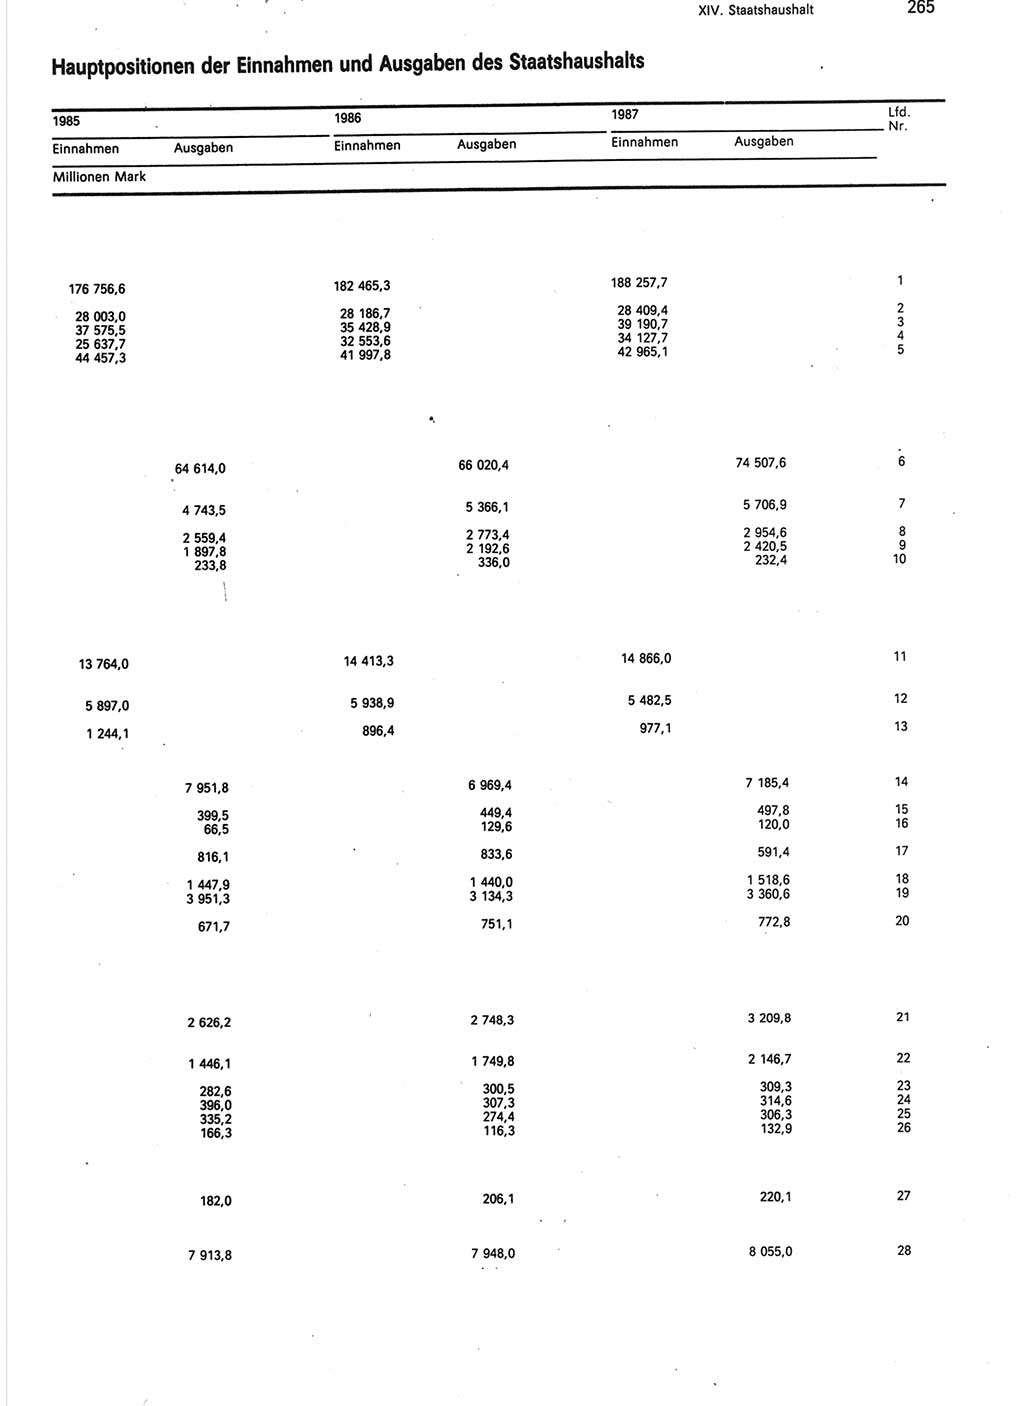 Statistisches Jahrbuch der Deutschen Demokratischen Republik (DDR) 1988, Seite 265 (Stat. Jb. DDR 1988, S. 265)